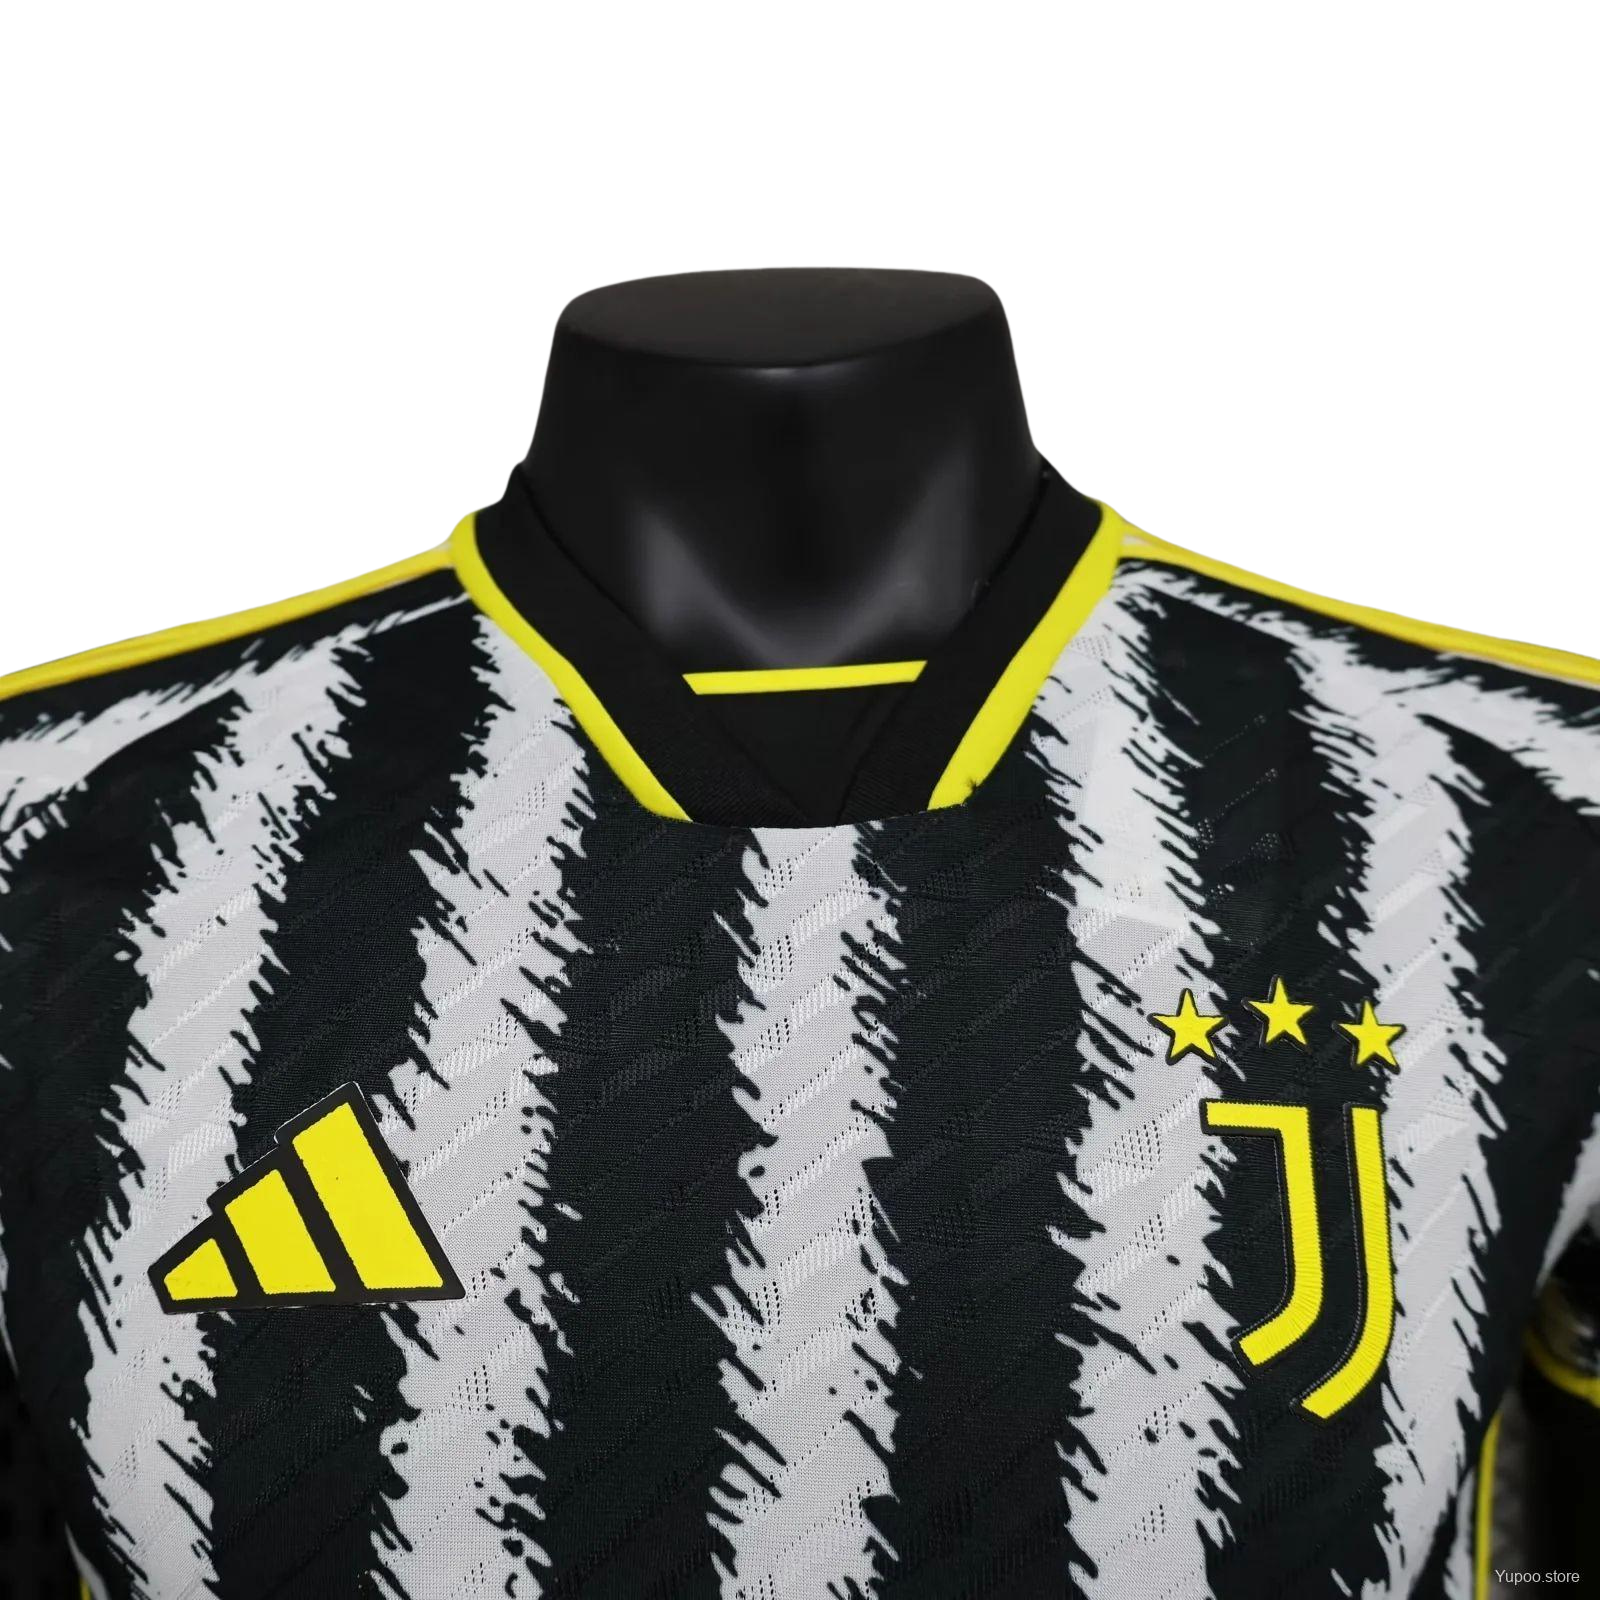 Juventus 23/24 Home Kit - Player Version - Front